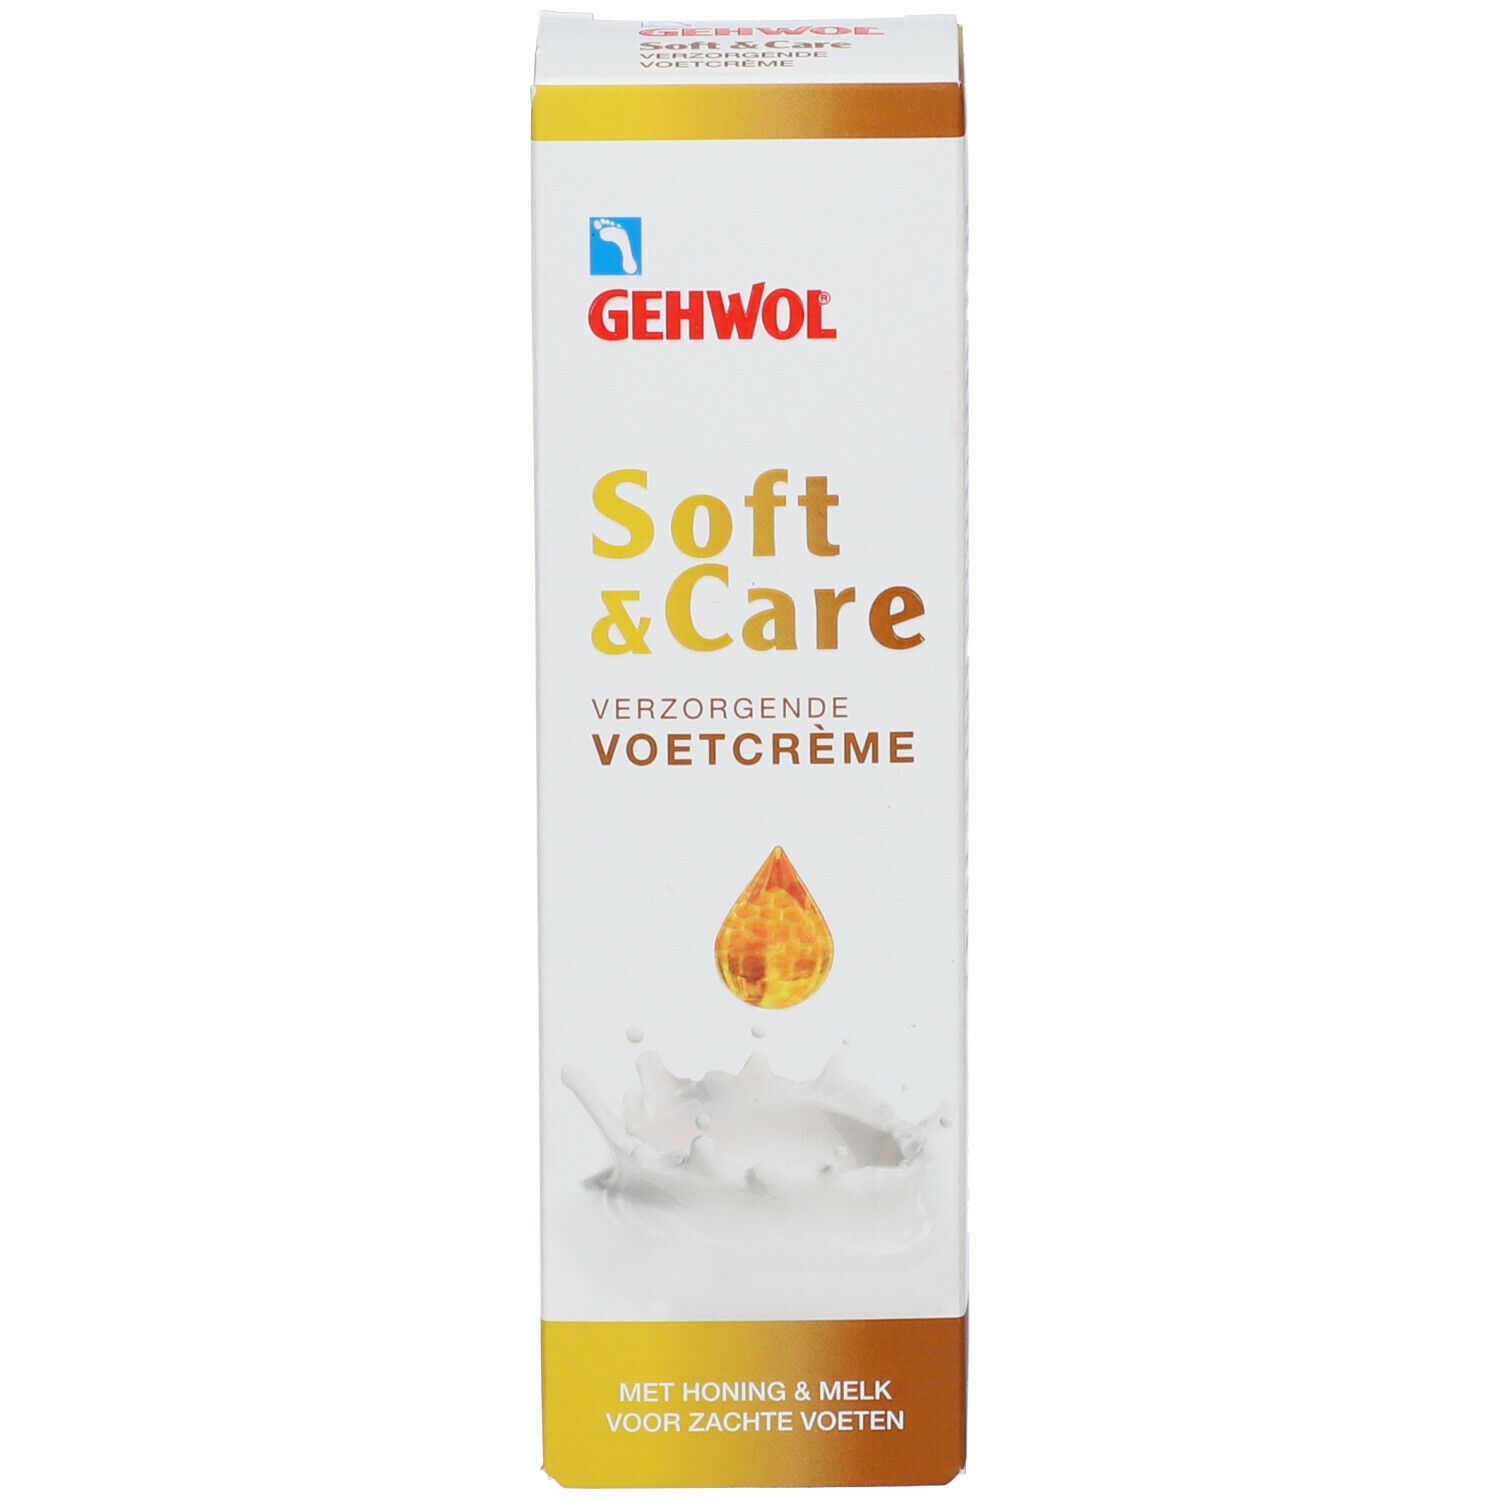 Gehwol Soft & Care Crème Pieds Soignante